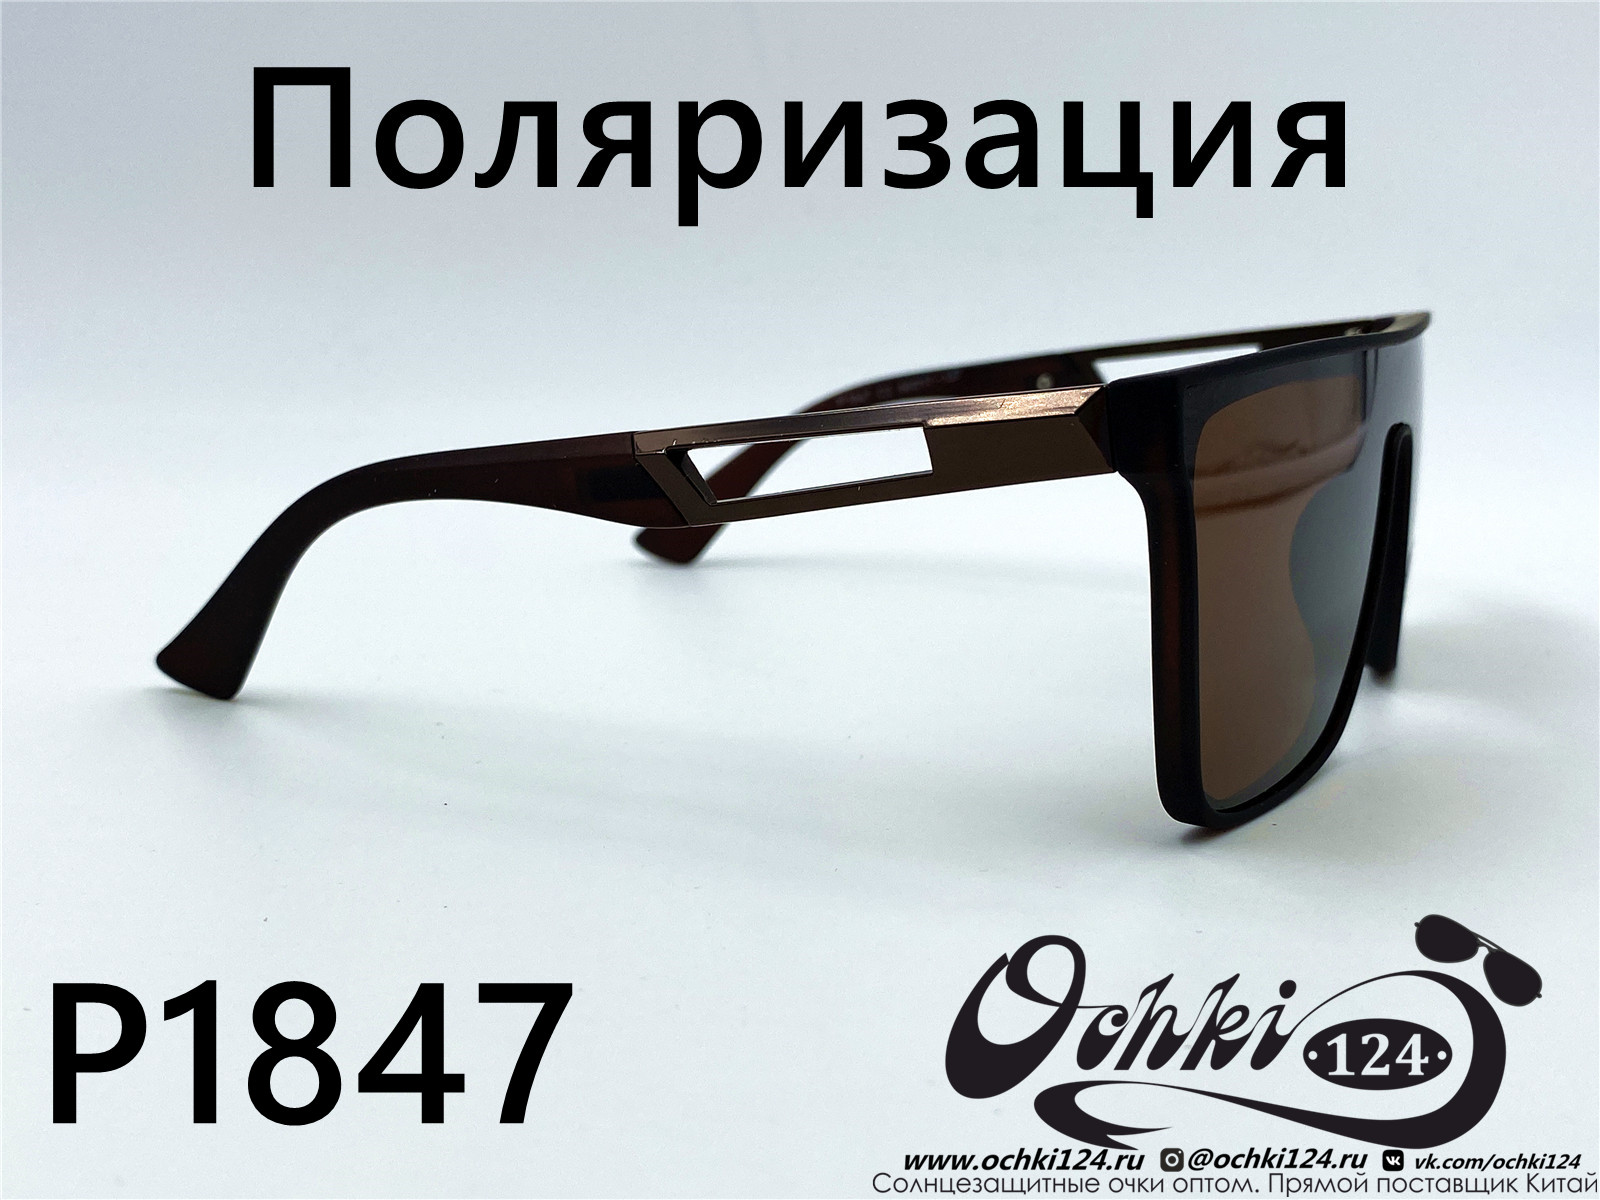  Солнцезащитные очки картинка 2022 Мужские Поляризованные Квадратные Matlrxs P1847-2 